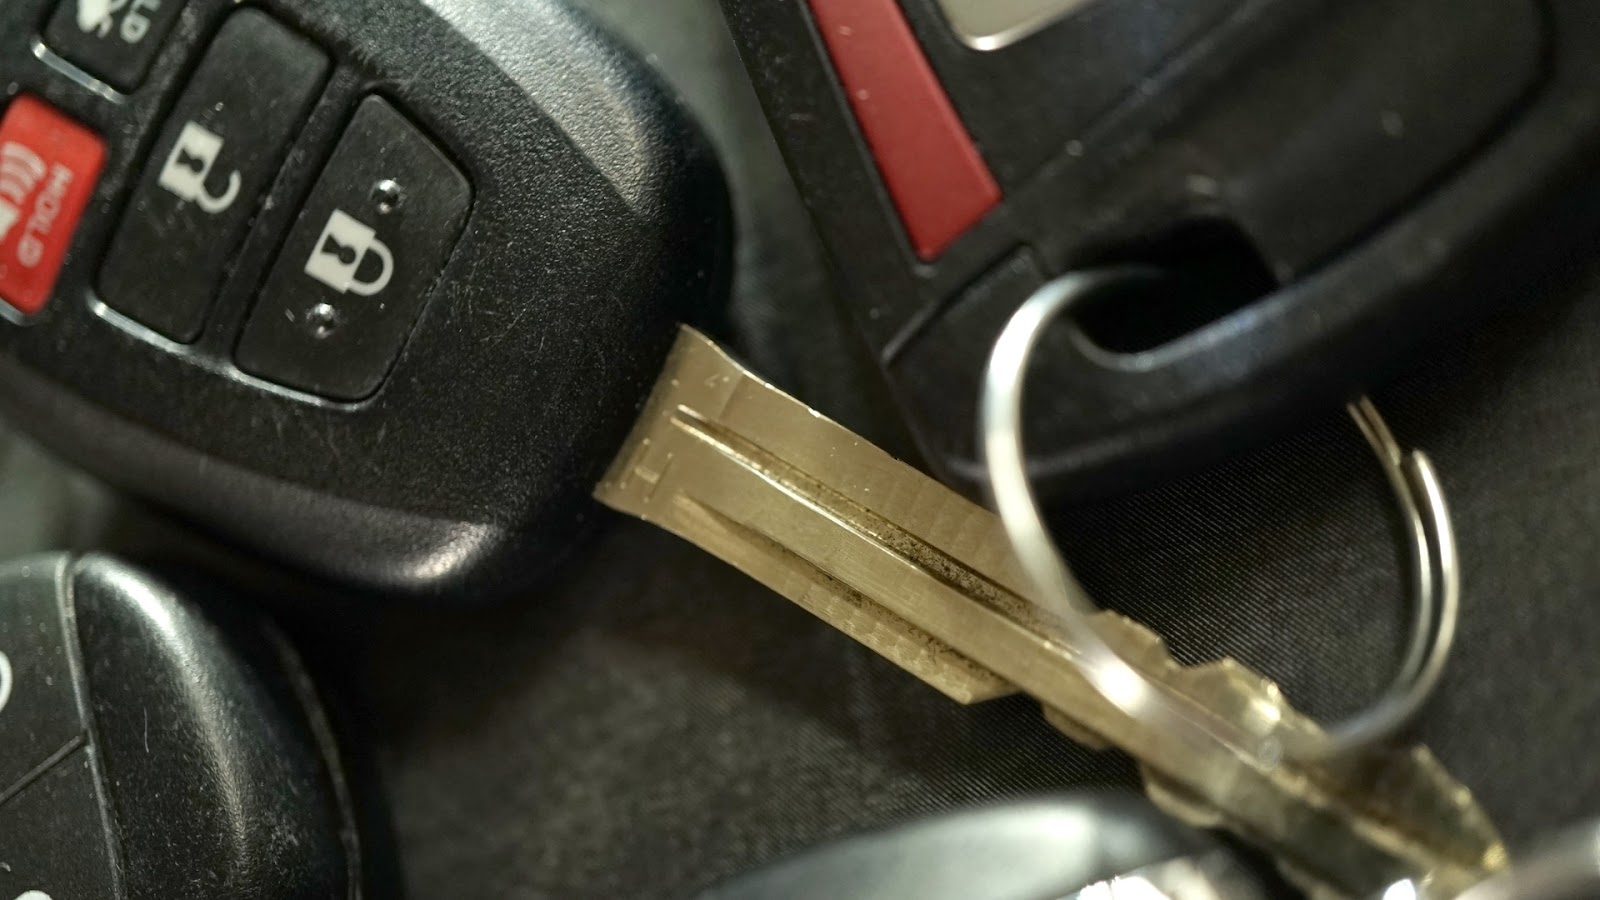 A car key fob